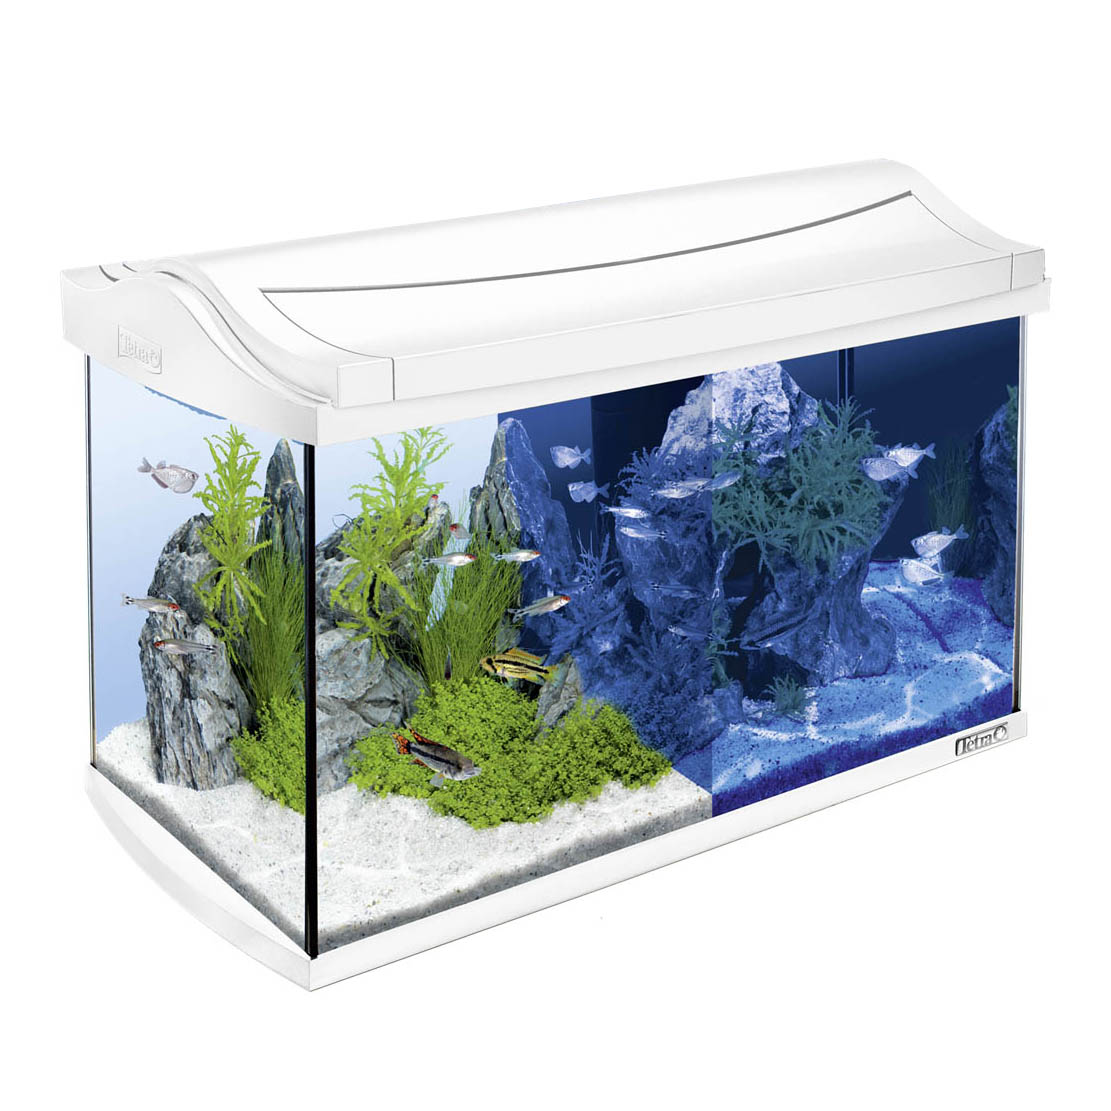 Аквариум — разделение аквариумов по назначению